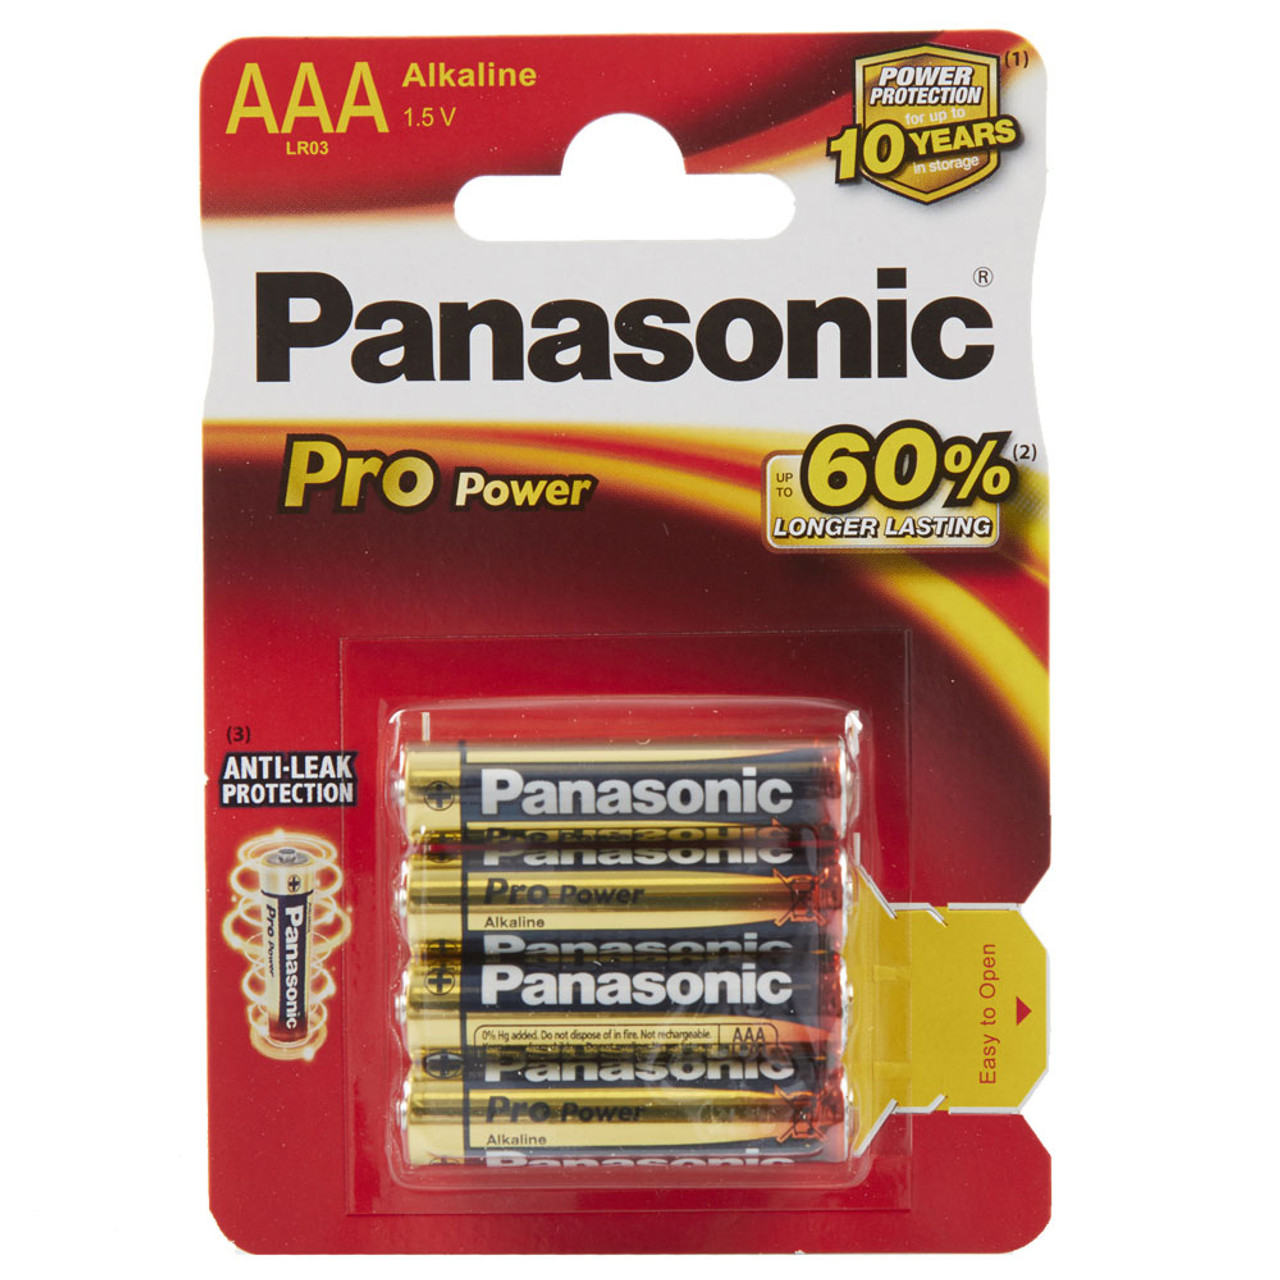 Panasonic Pro Power AAA LR03 Batteries